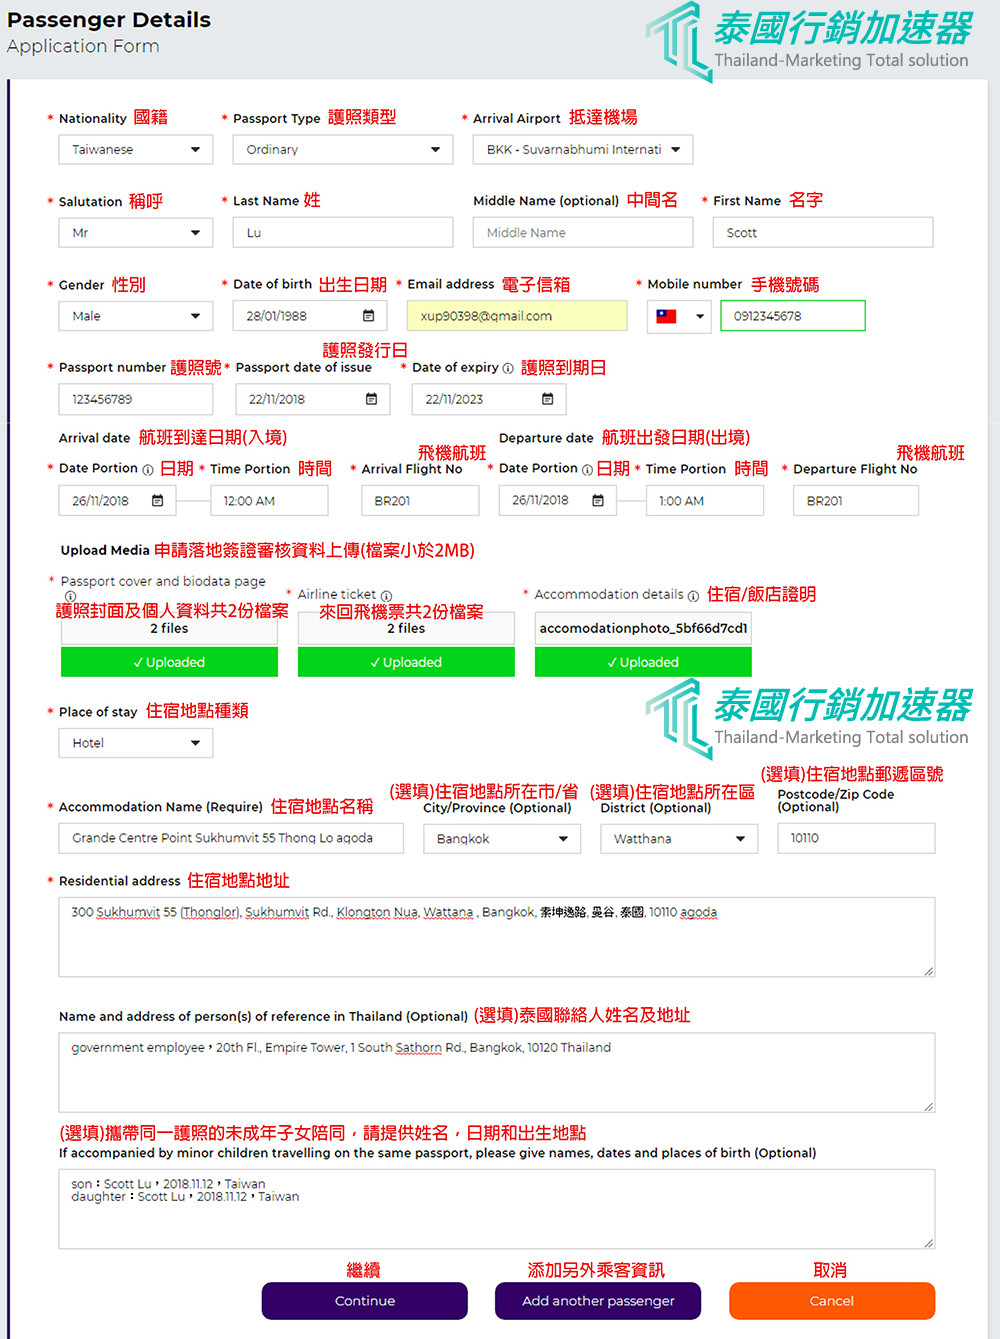 泰國E-VOA電子落地簽證乘客詳細信息填寫表單說明